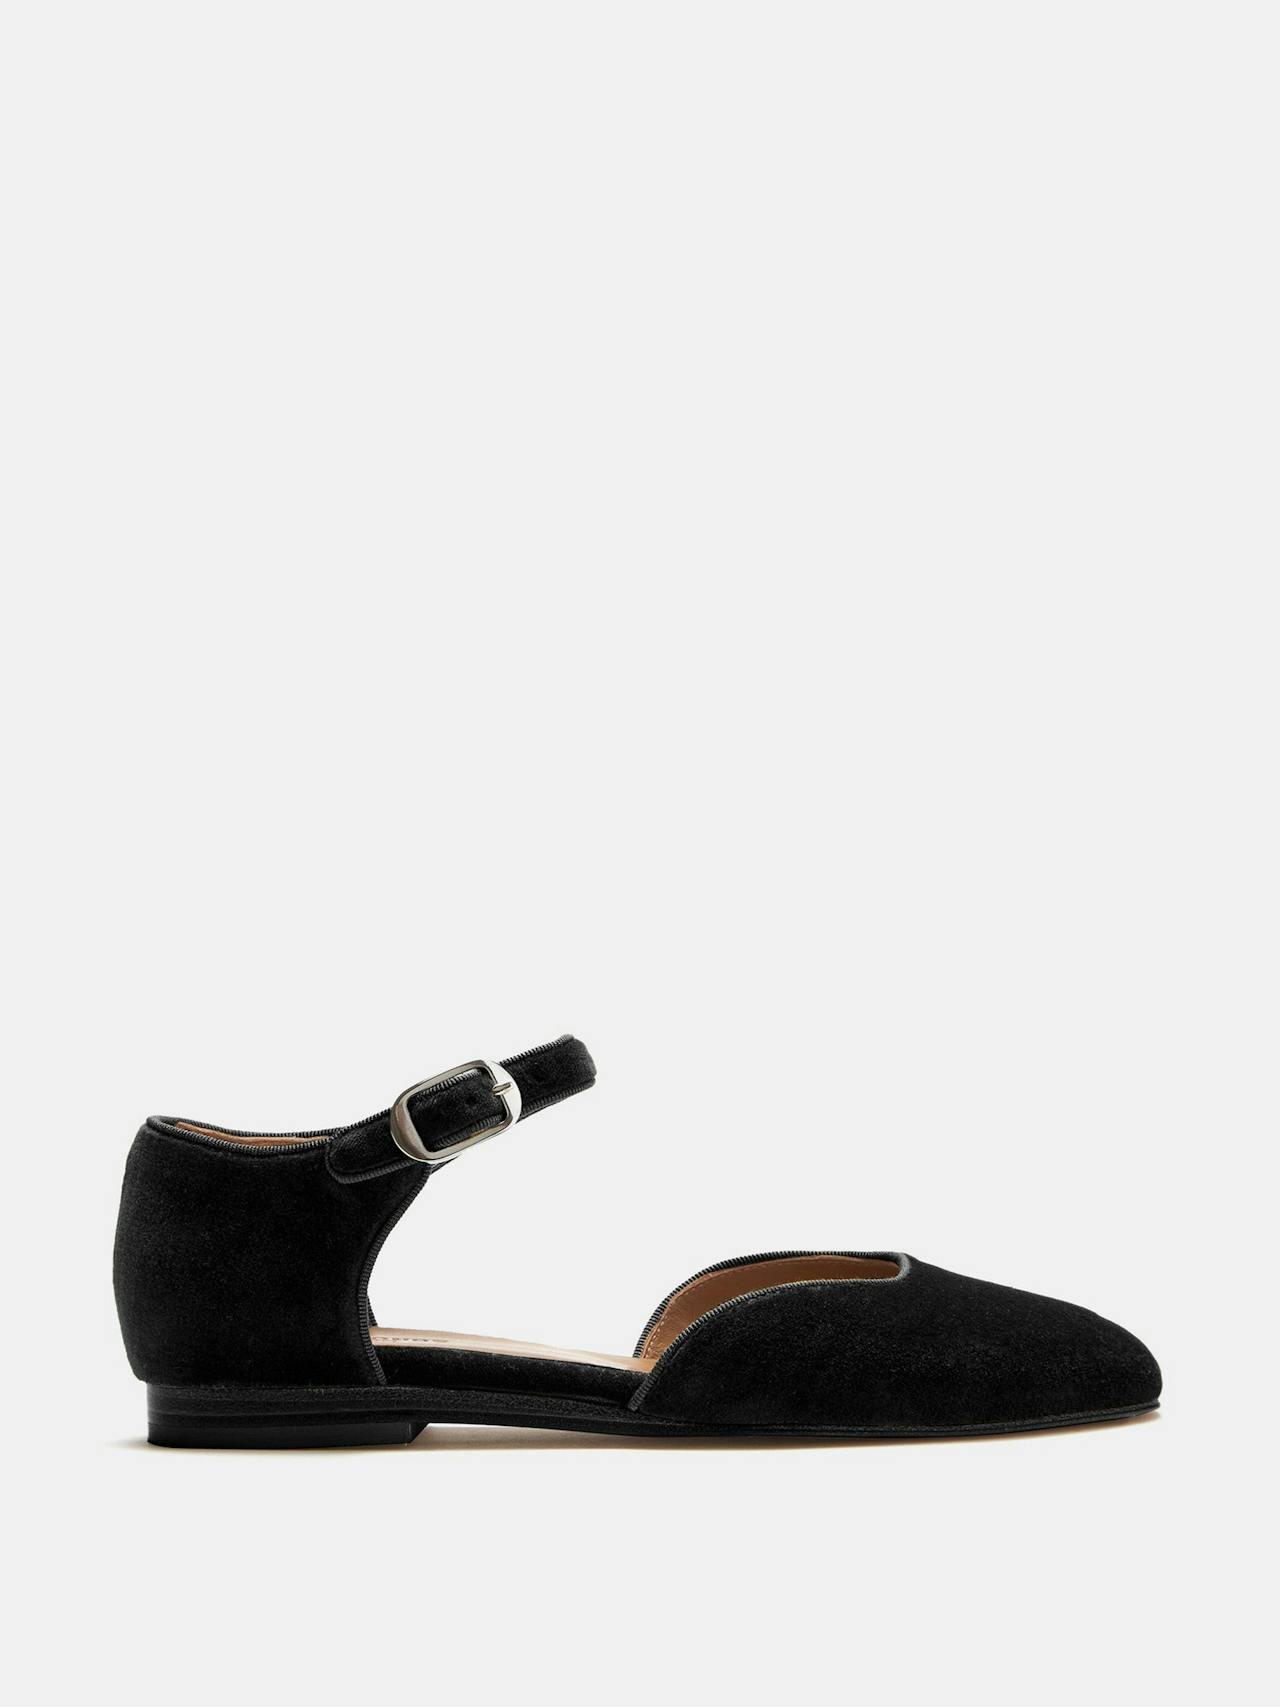 Black velvet Mary Jane sandals